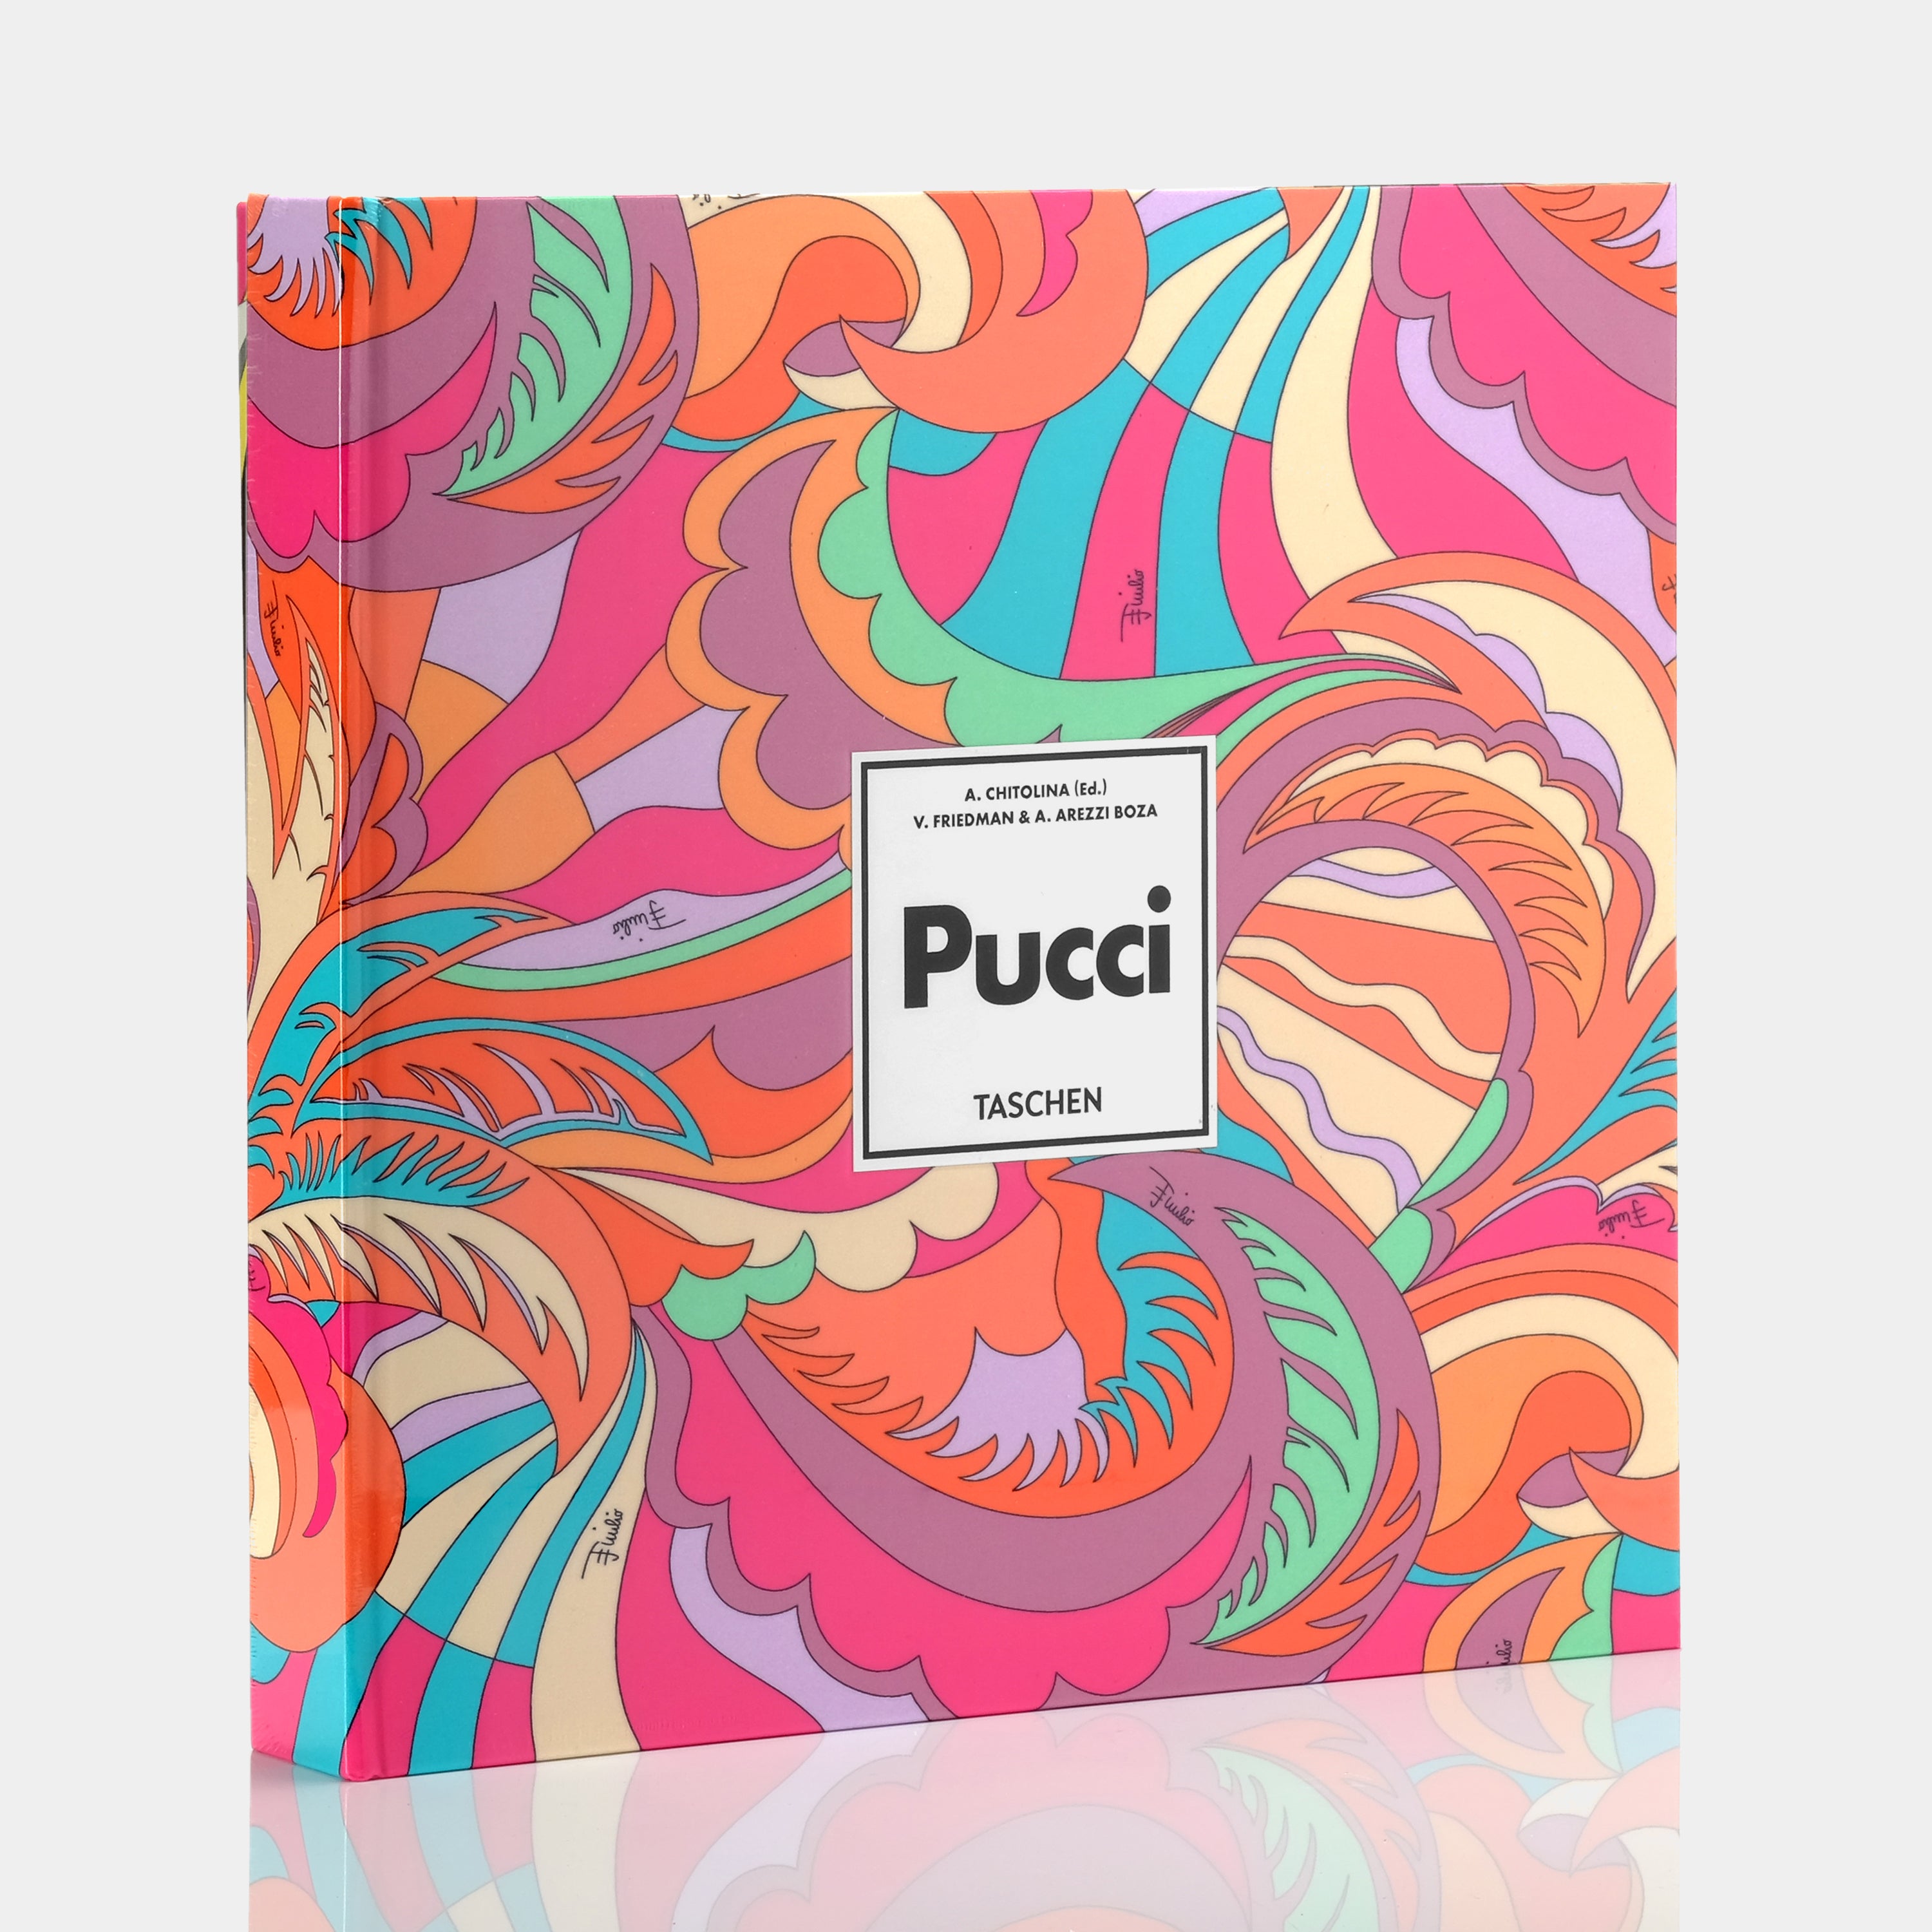 Pucci (Updated Edition) by Vanessa Friedman XL Taschen Book